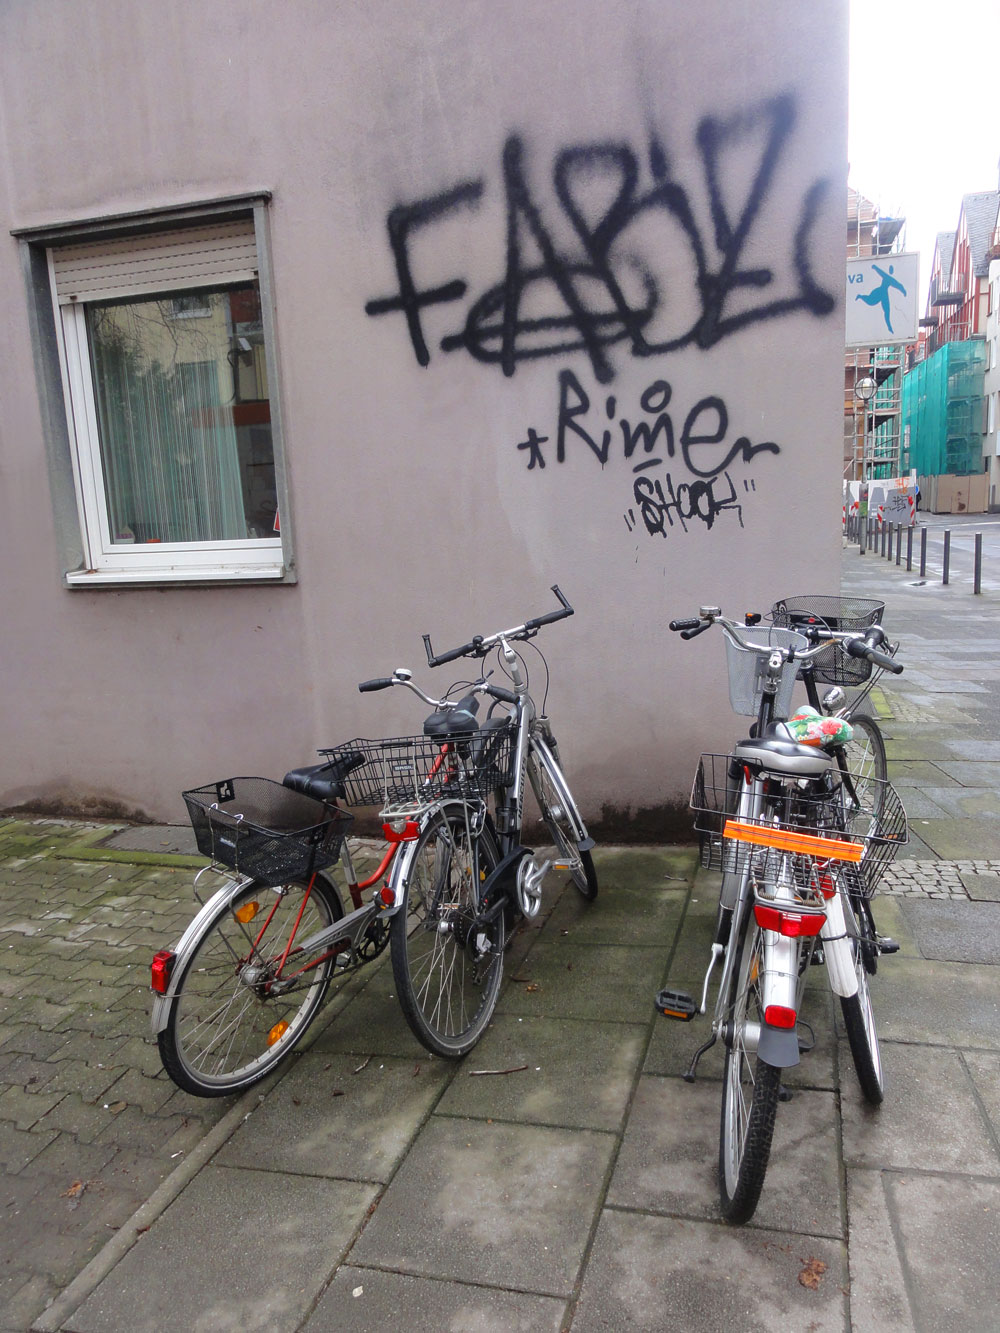 Die Straßenkunst und das Fahrrad